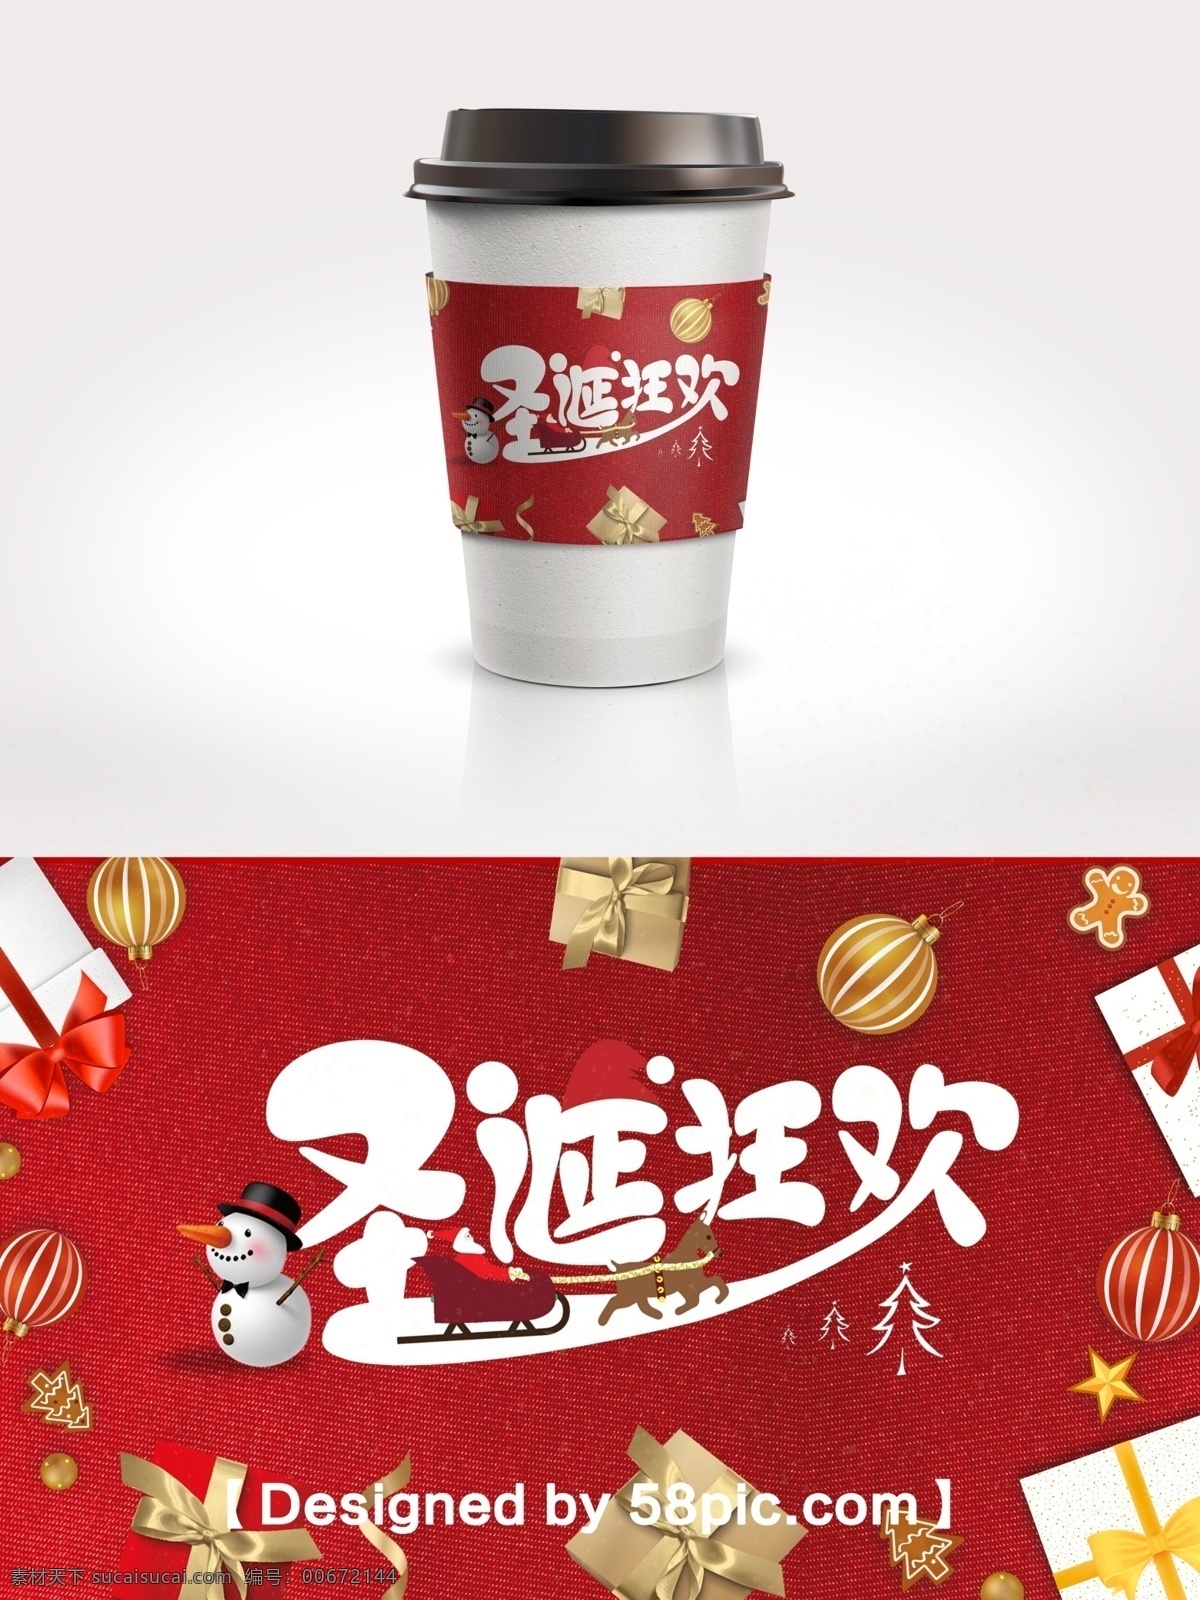 红色 喜庆 欢乐圣诞 节日 包装 咖啡杯 套 红色大气 psd素材 欢乐圣诞节 节日包装 咖啡 杯杯 广告设计模版 礼物素材